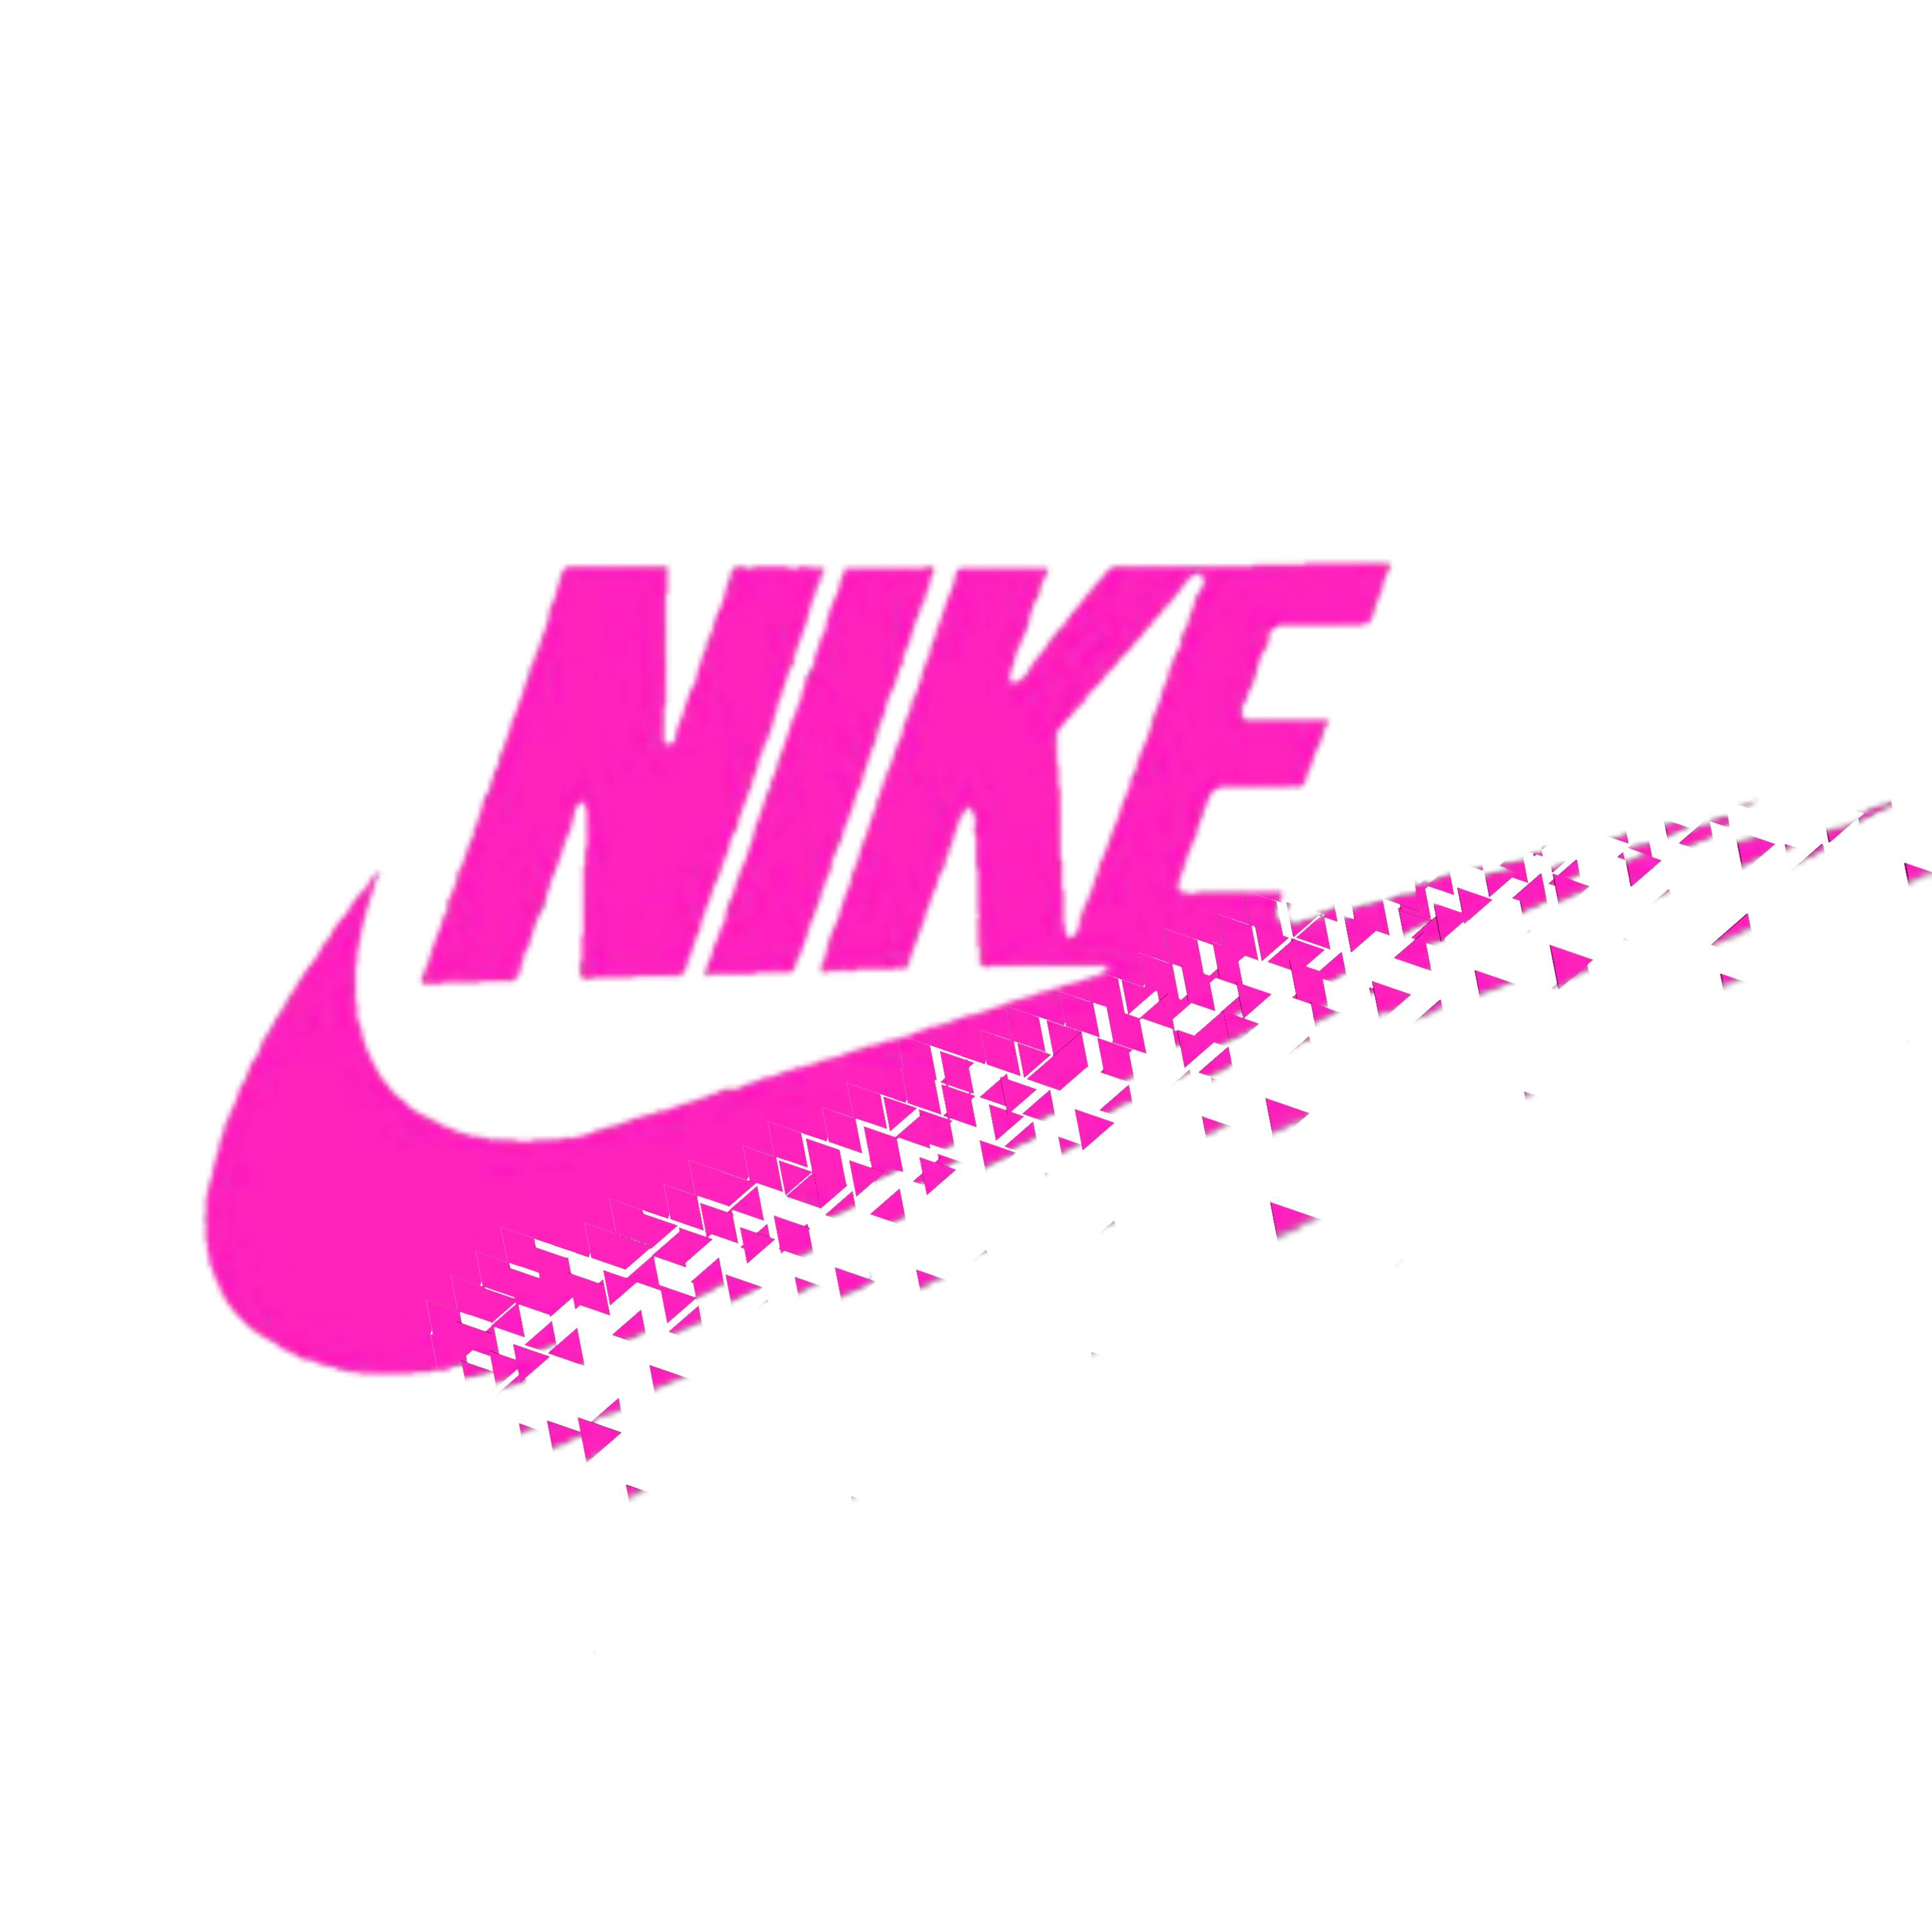 nike pink freetoedit - Sticker by